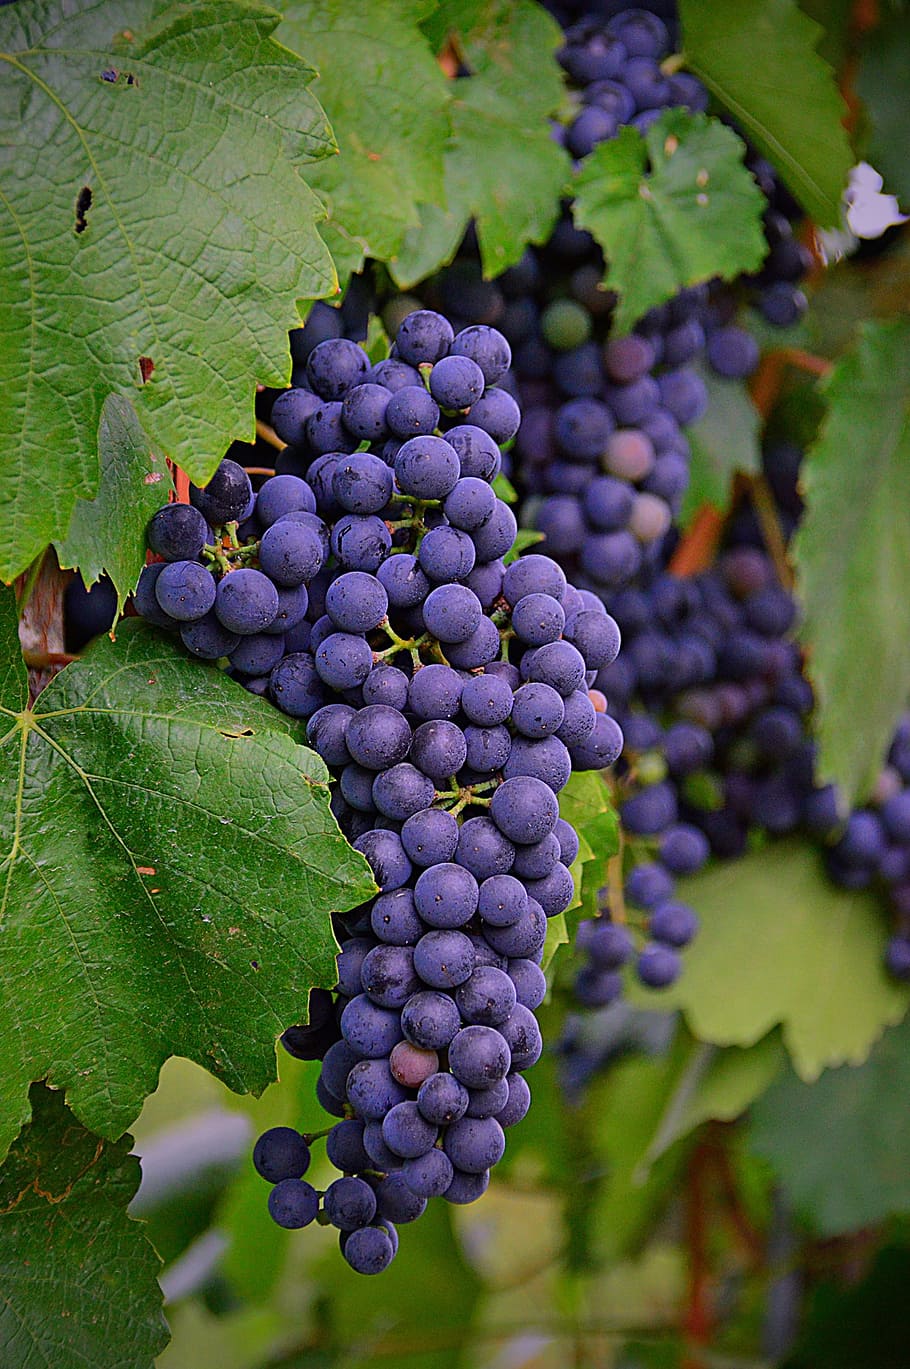 foto tilt shift, anggur, anggur merah, buah, alam, biru, tanaman, buah matang, szőlőszem, model tahun